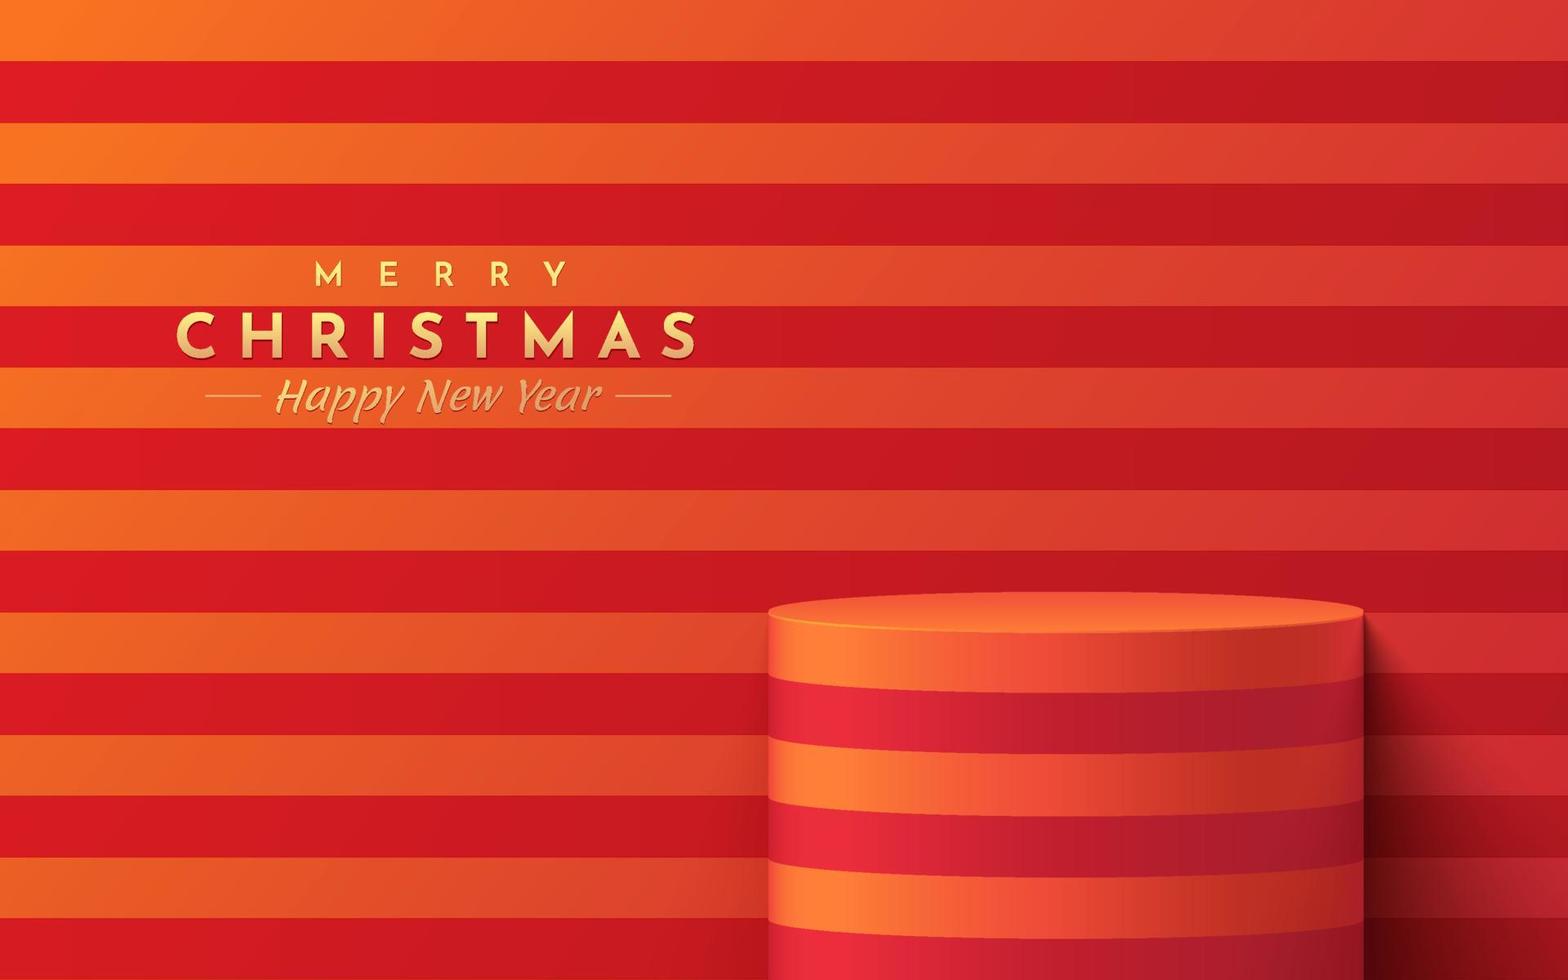 Podio de soporte de cilindro 3d realista rojo y naranja, escena de pared de rayas horizontales. sala de estudio abstracto de vector con diseño de plataforma. Escena mínima de feliz navidad para exhibición de promoción, escaparate.